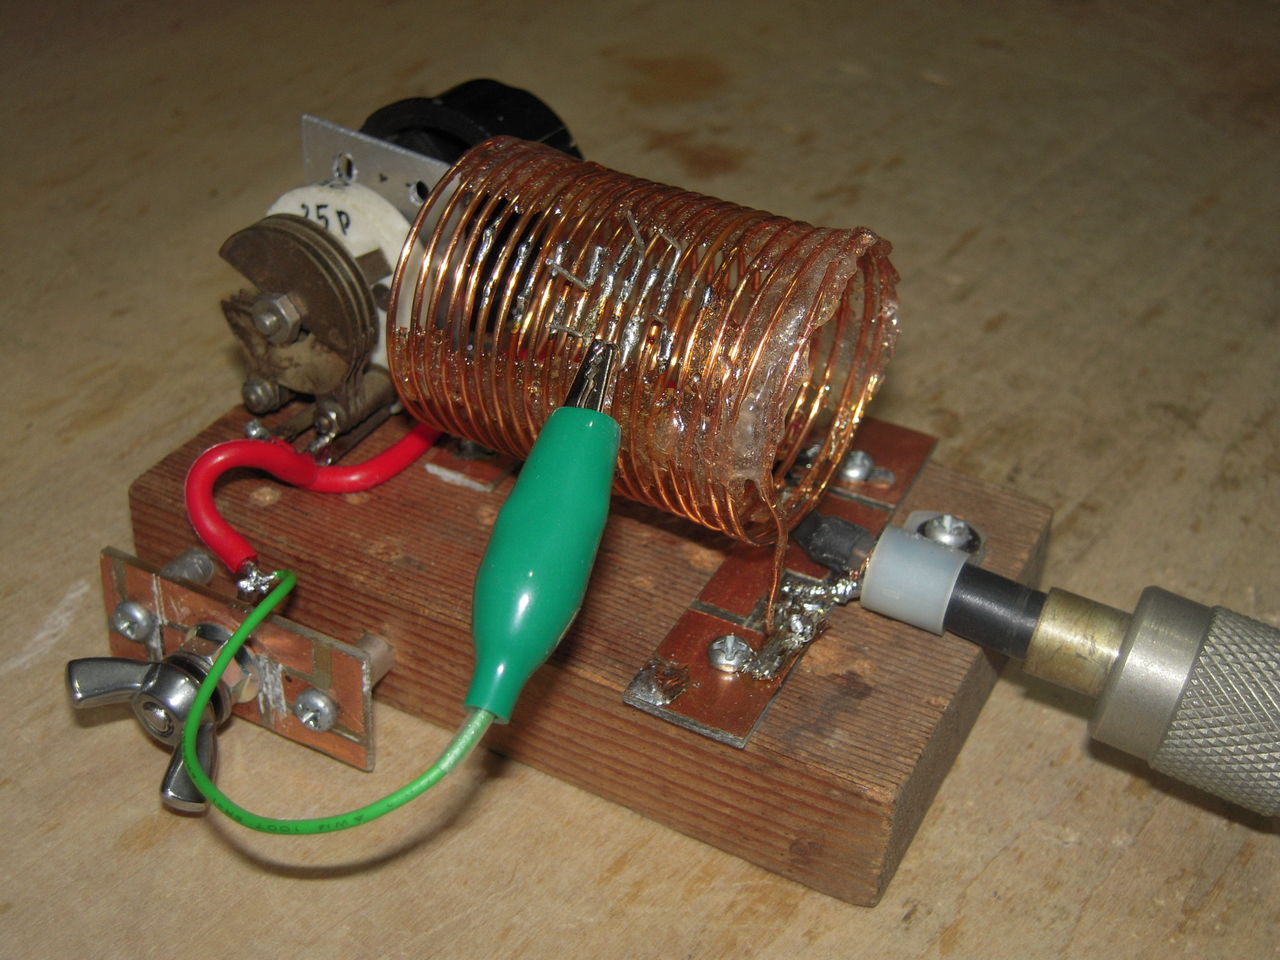 ツェップ タイプアンテナの実験 その2 アマチュア無線の機器とアンテナの製作 Ja1viy